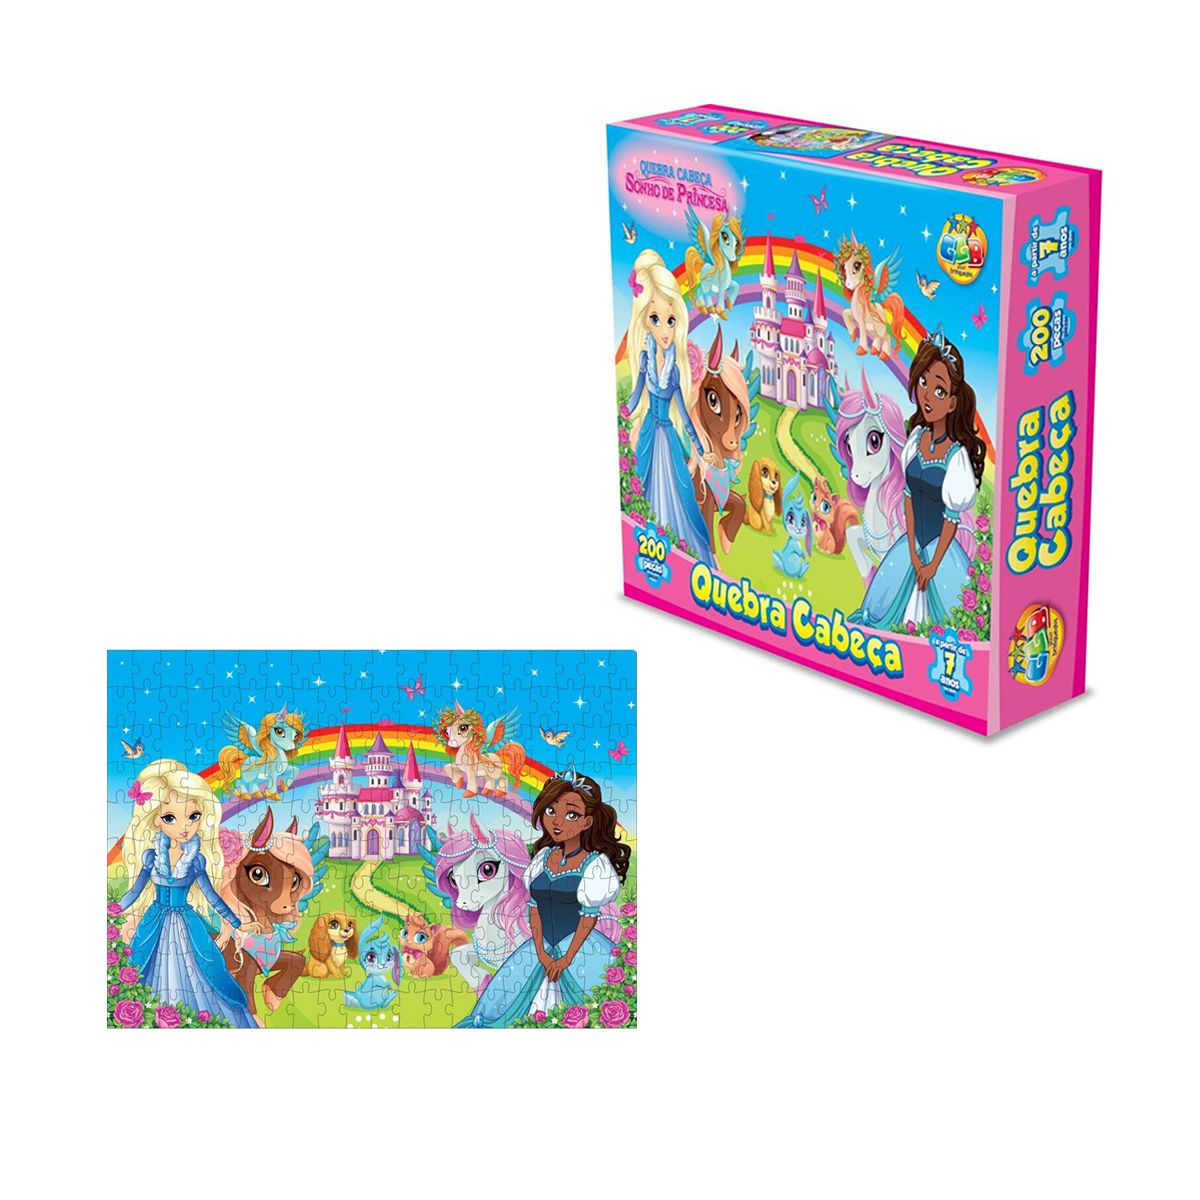 Quebra-cabeça Montando Números Jogo Princesas 1-20 Toyster - Loja Zuza  Brinquedos